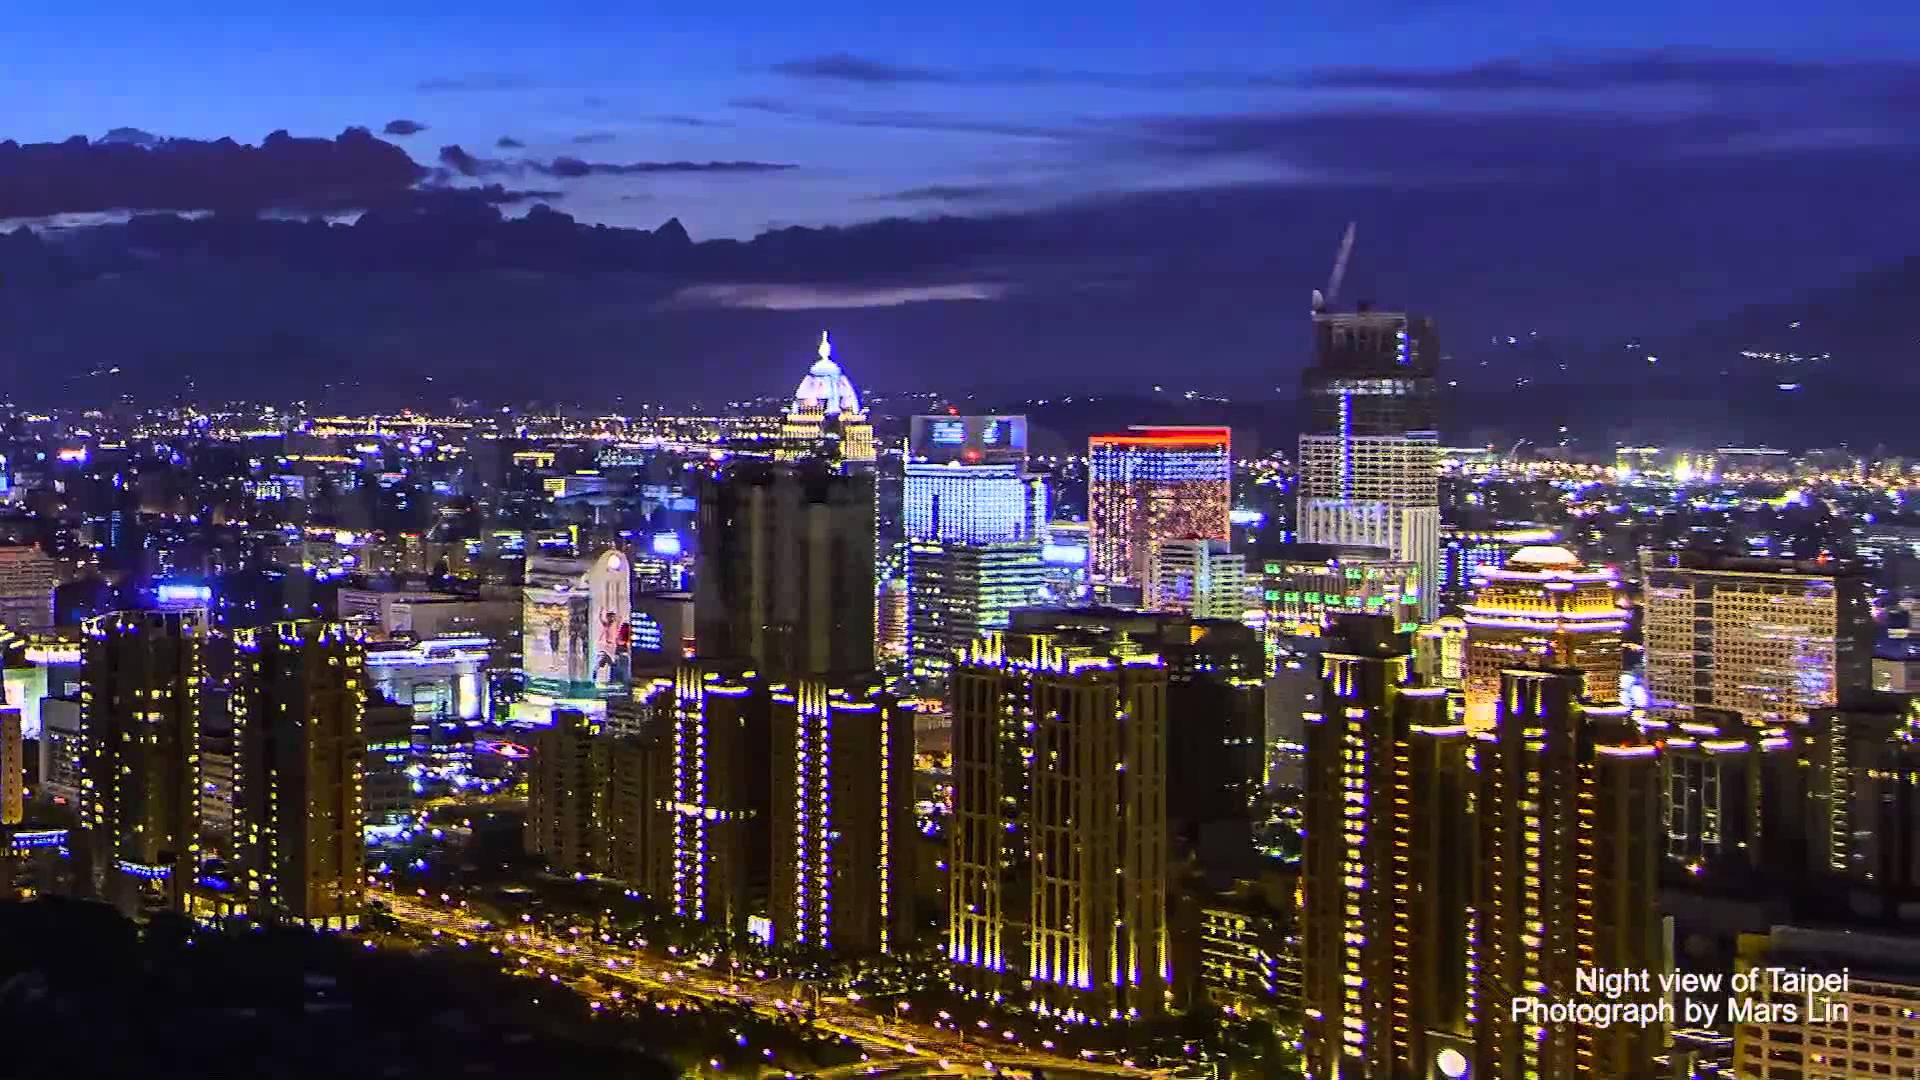 縮時攝影- 美麗台灣: Night view of Taipei (HD) - YouTube